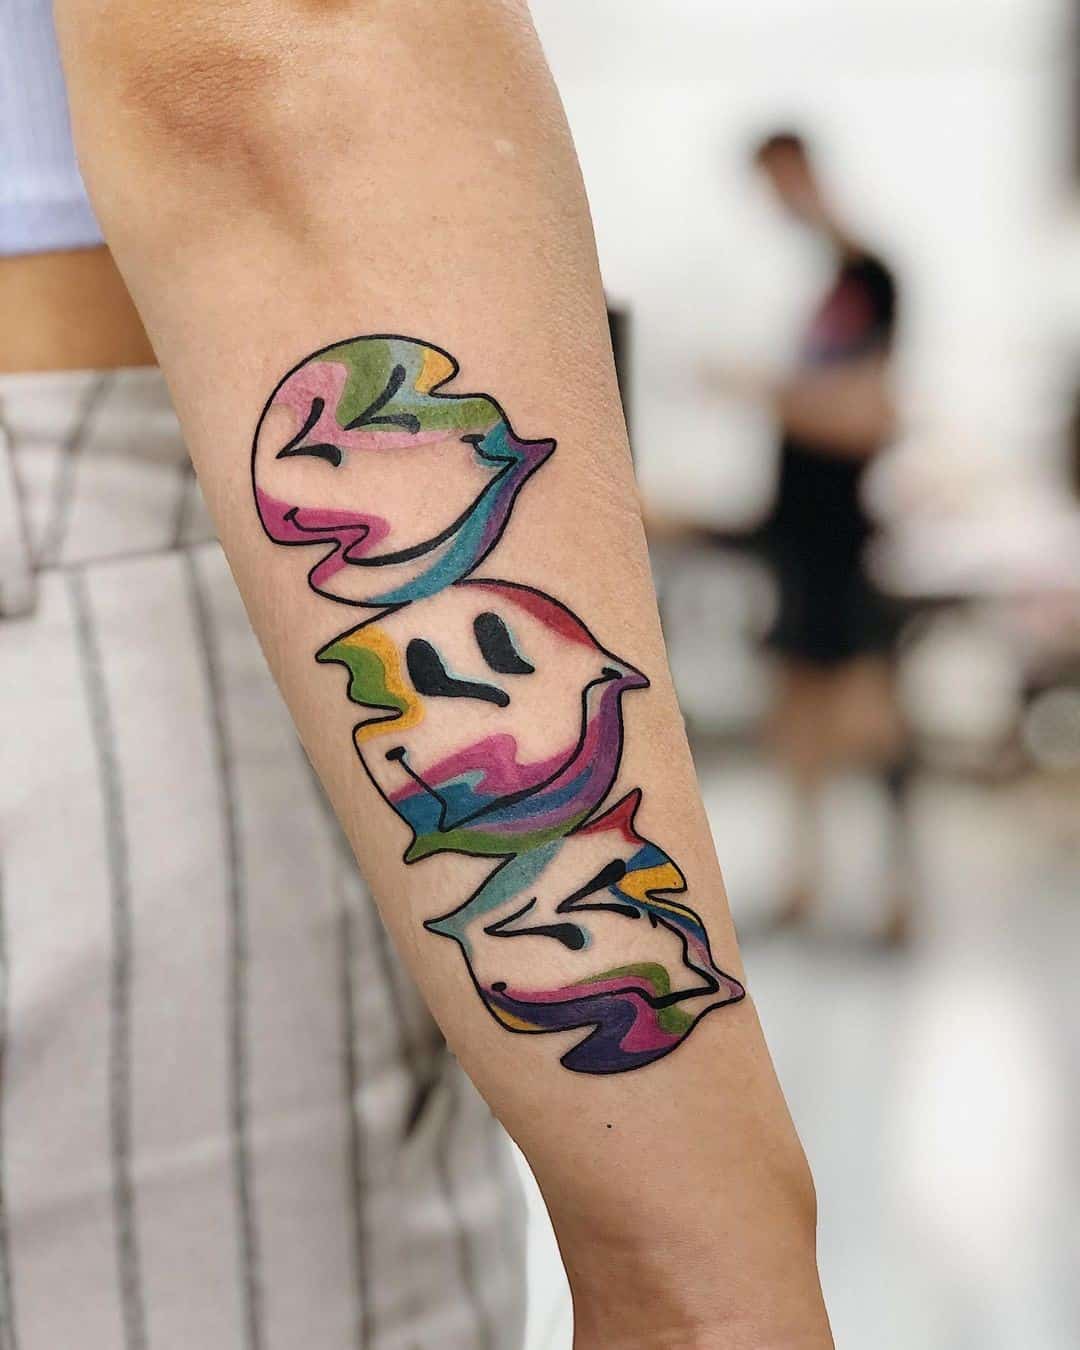 Tatuaje sonriente artístico y colorido 